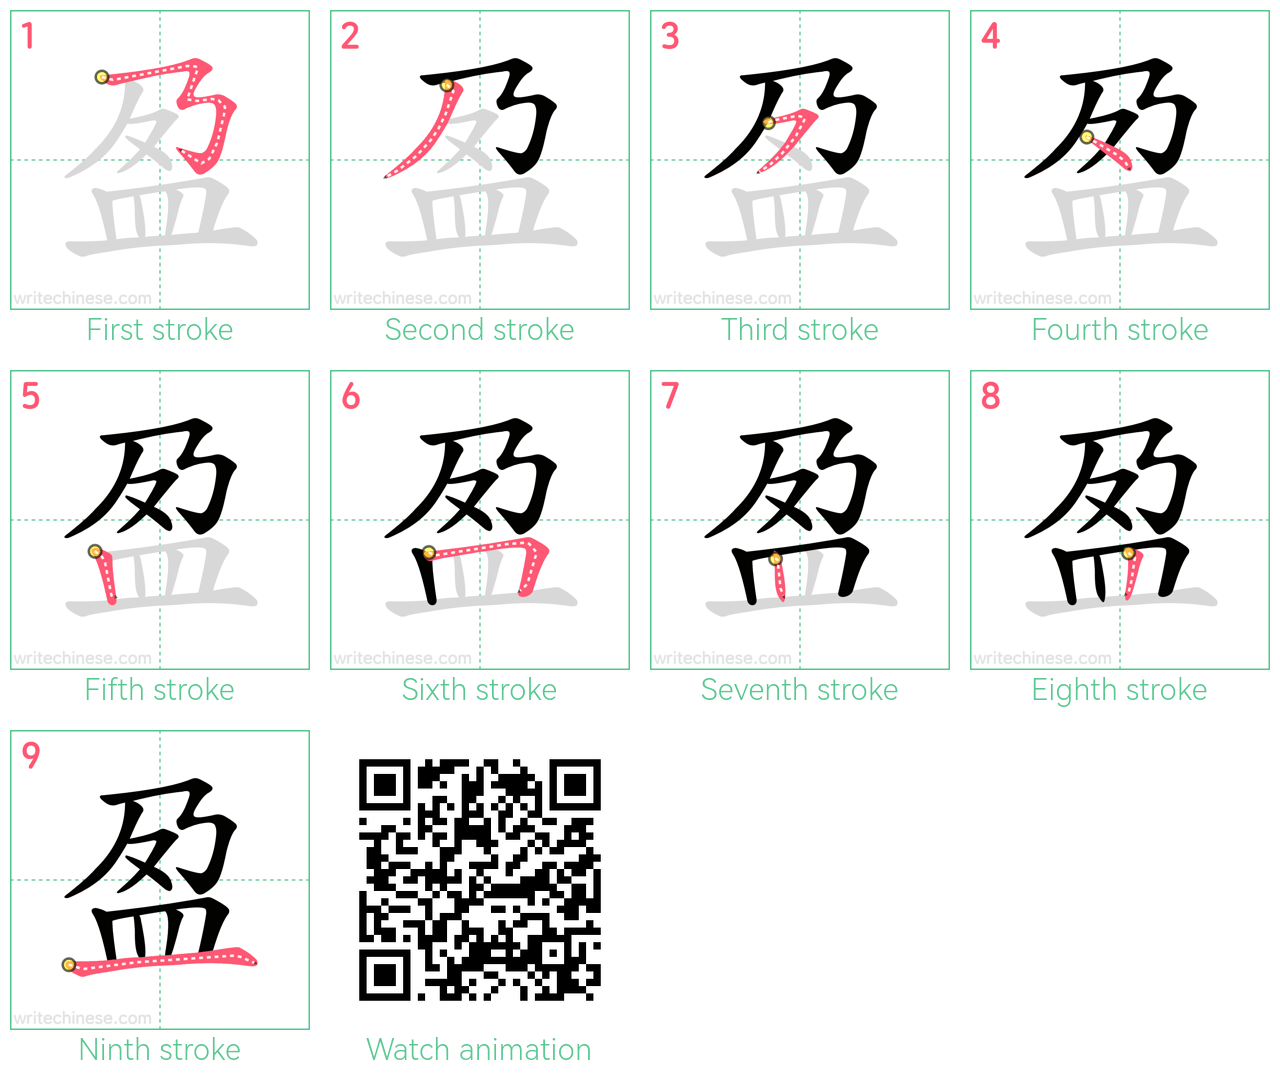 盈 step-by-step stroke order diagrams